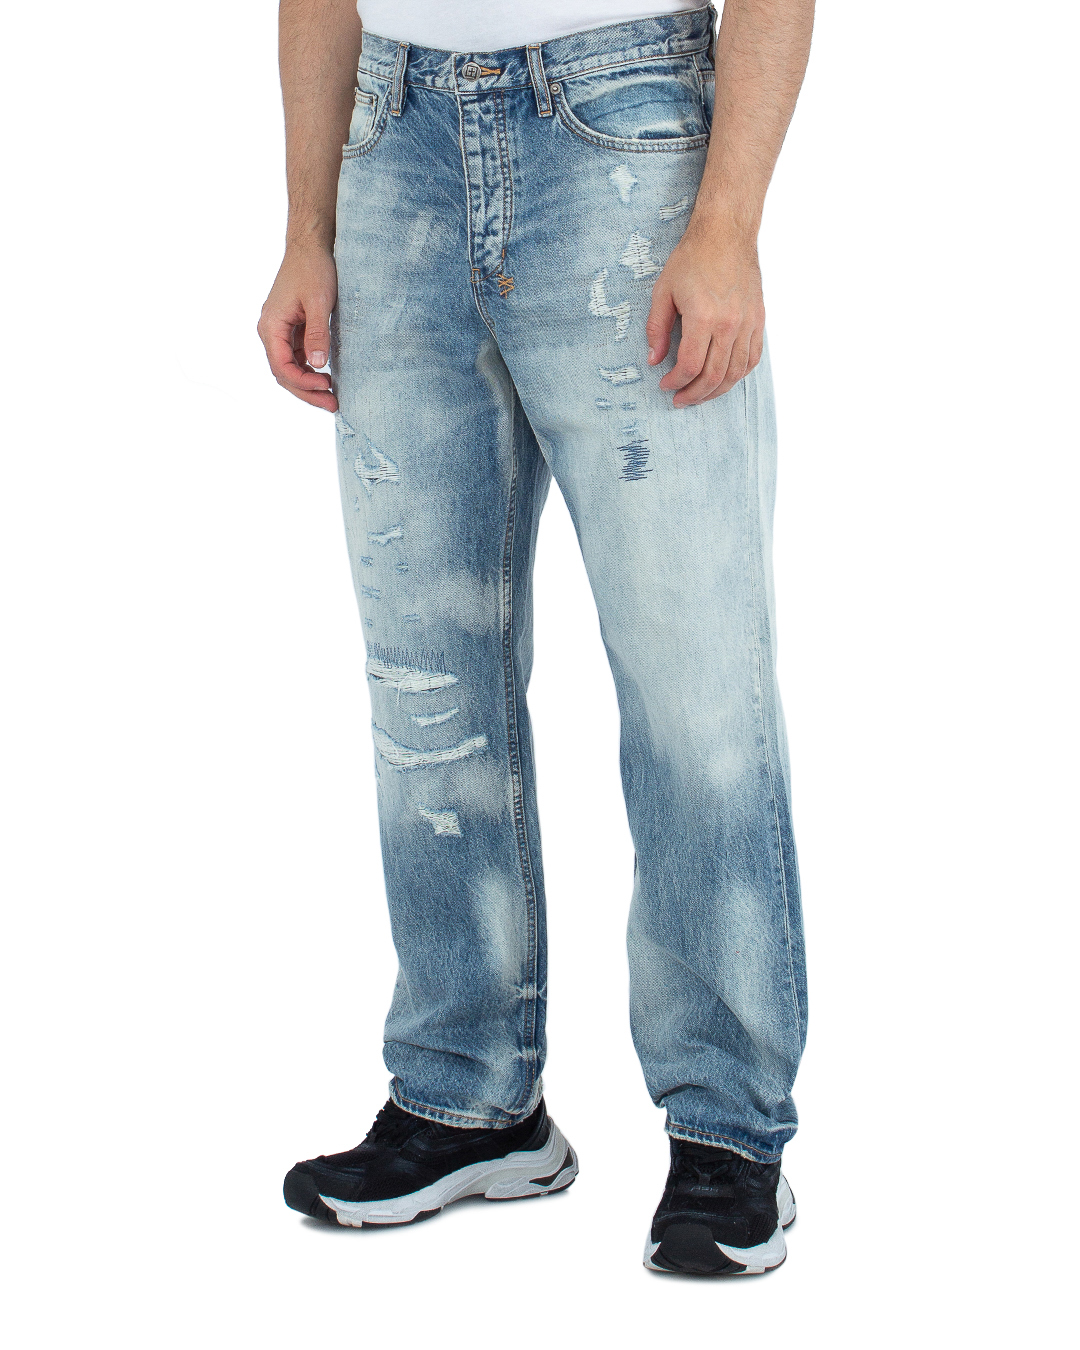 джинсы KSUBI MSP23DJ009 синий 31, размер 31 - фото 3